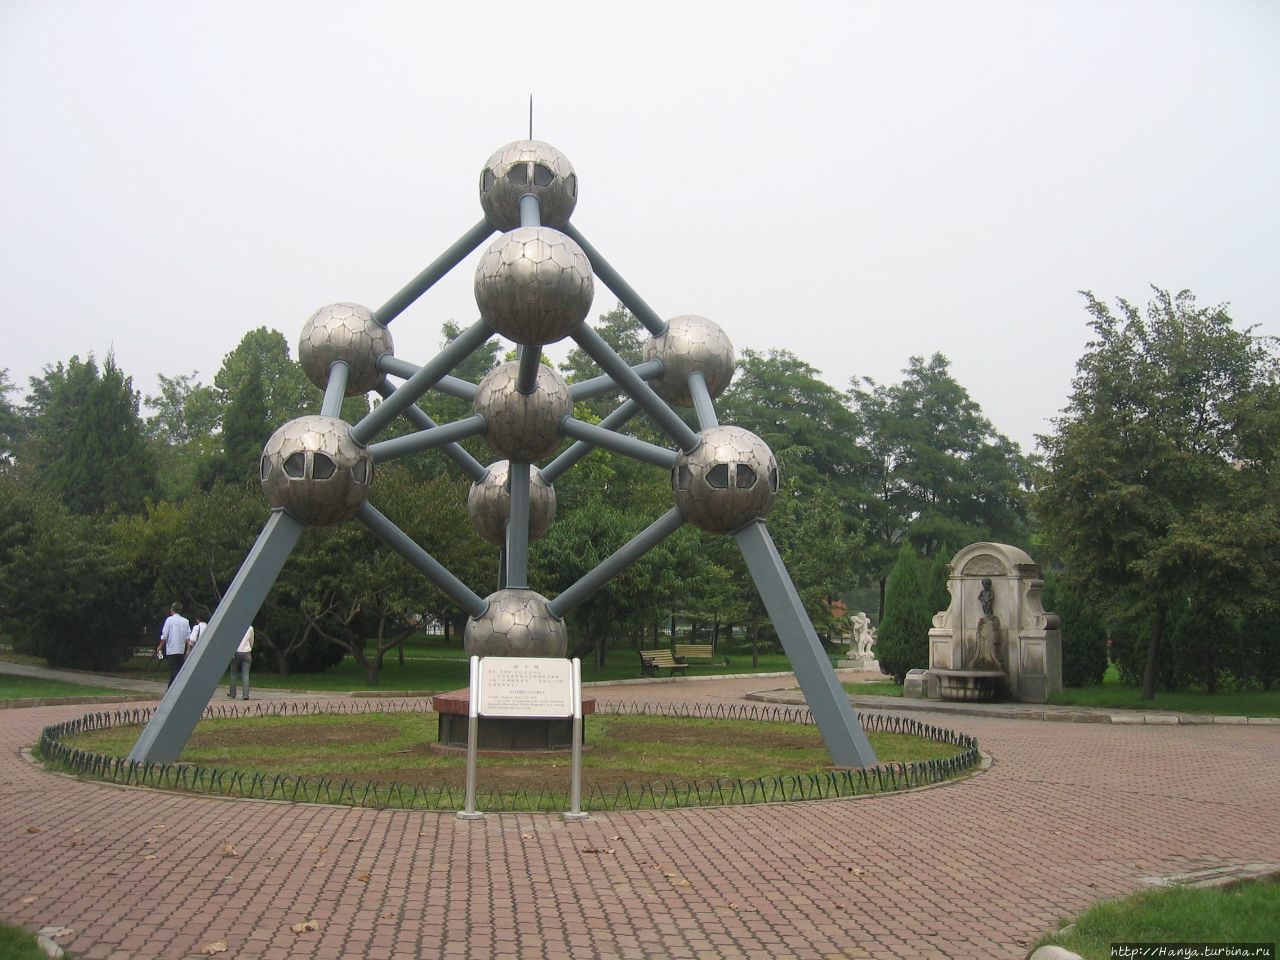 Пекин. Парк Миниатюр.Брюссель. Модель мирного атома Пекин, Китай